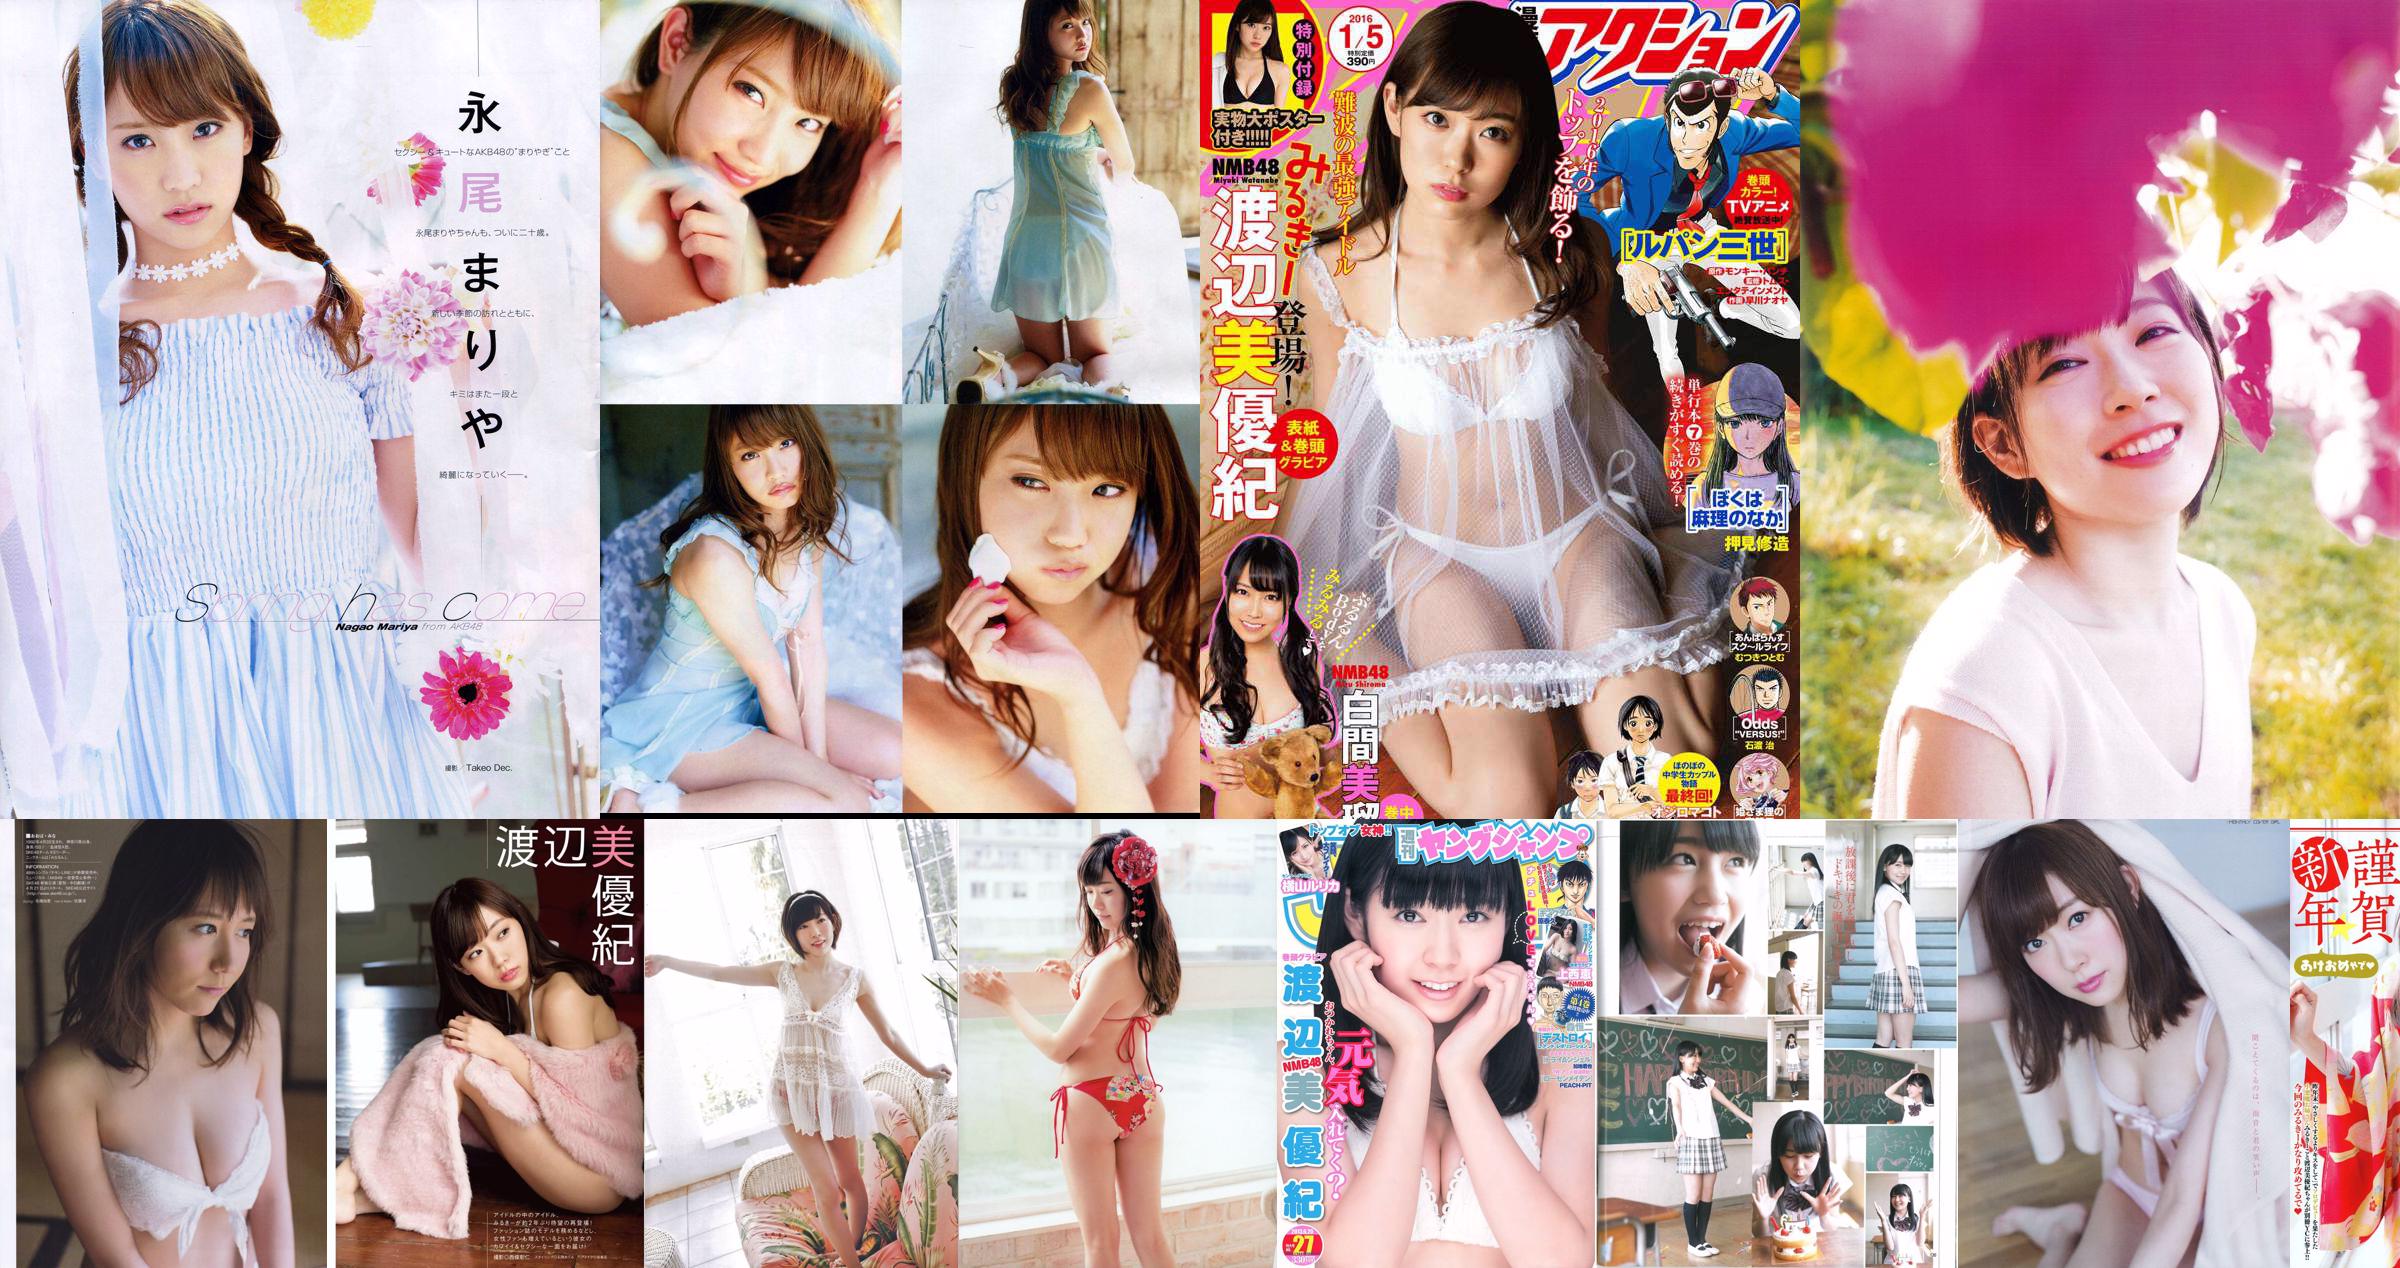 [ENTAME(エンタメ)] Watanabe Miyuki Nagao まりや Yoshida Juli Edição de maio de 2014 Photo Magazine No.0be011 Página 1